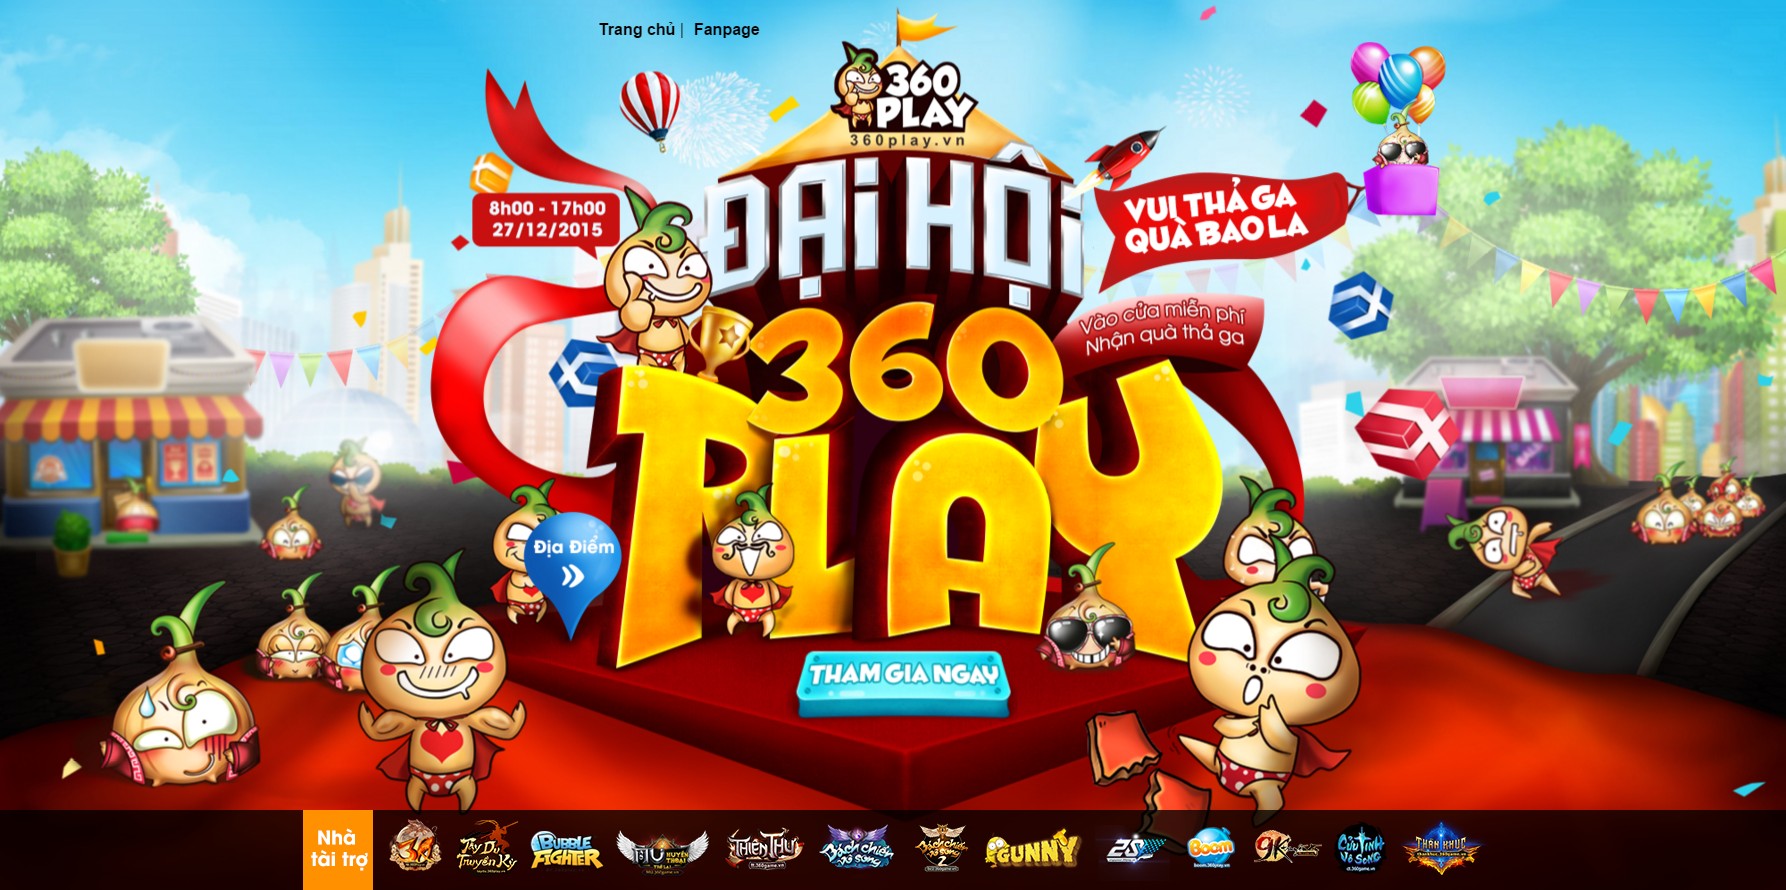 VNG tổ chức ngày đại hội 360Play sân chơi quy tụ hơn 50.000 game thủ